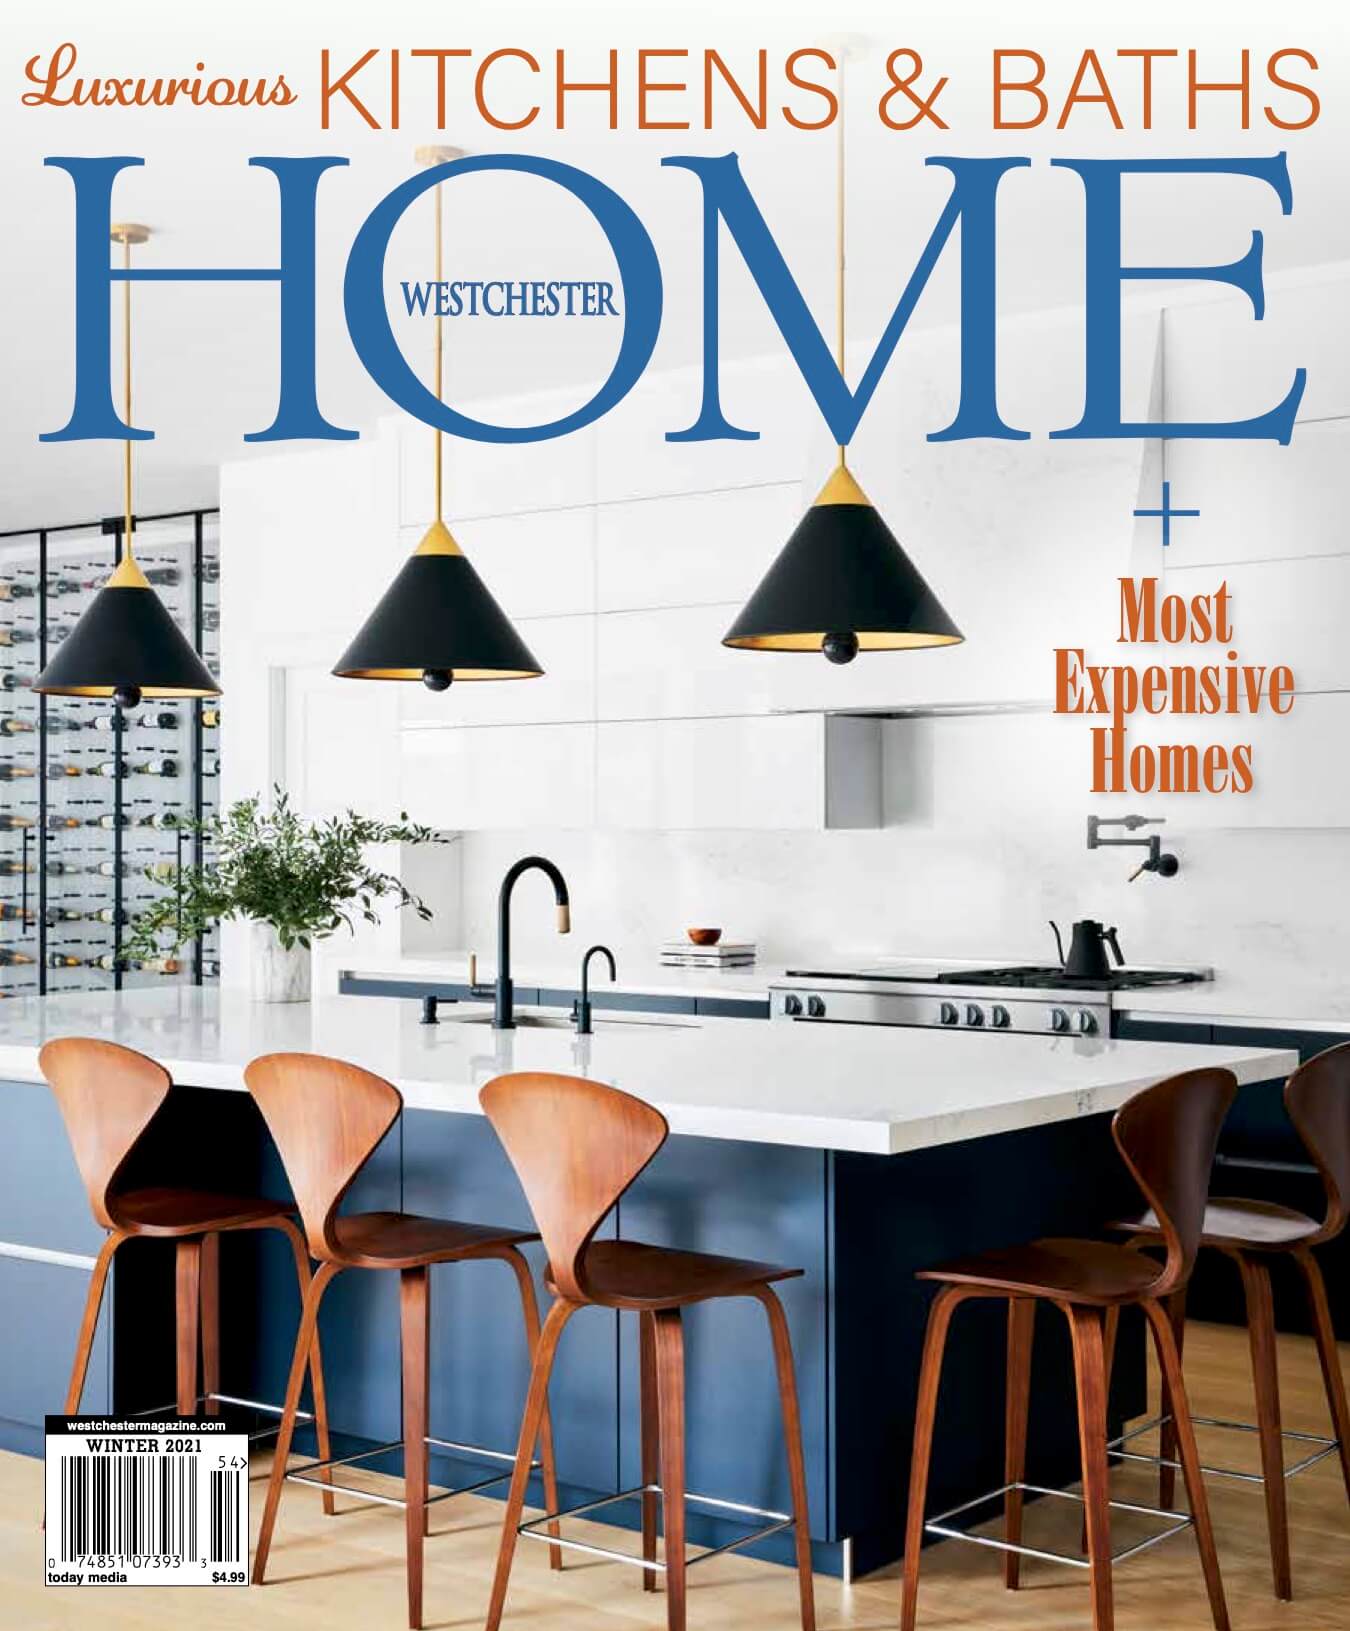 Westchester Home magazine